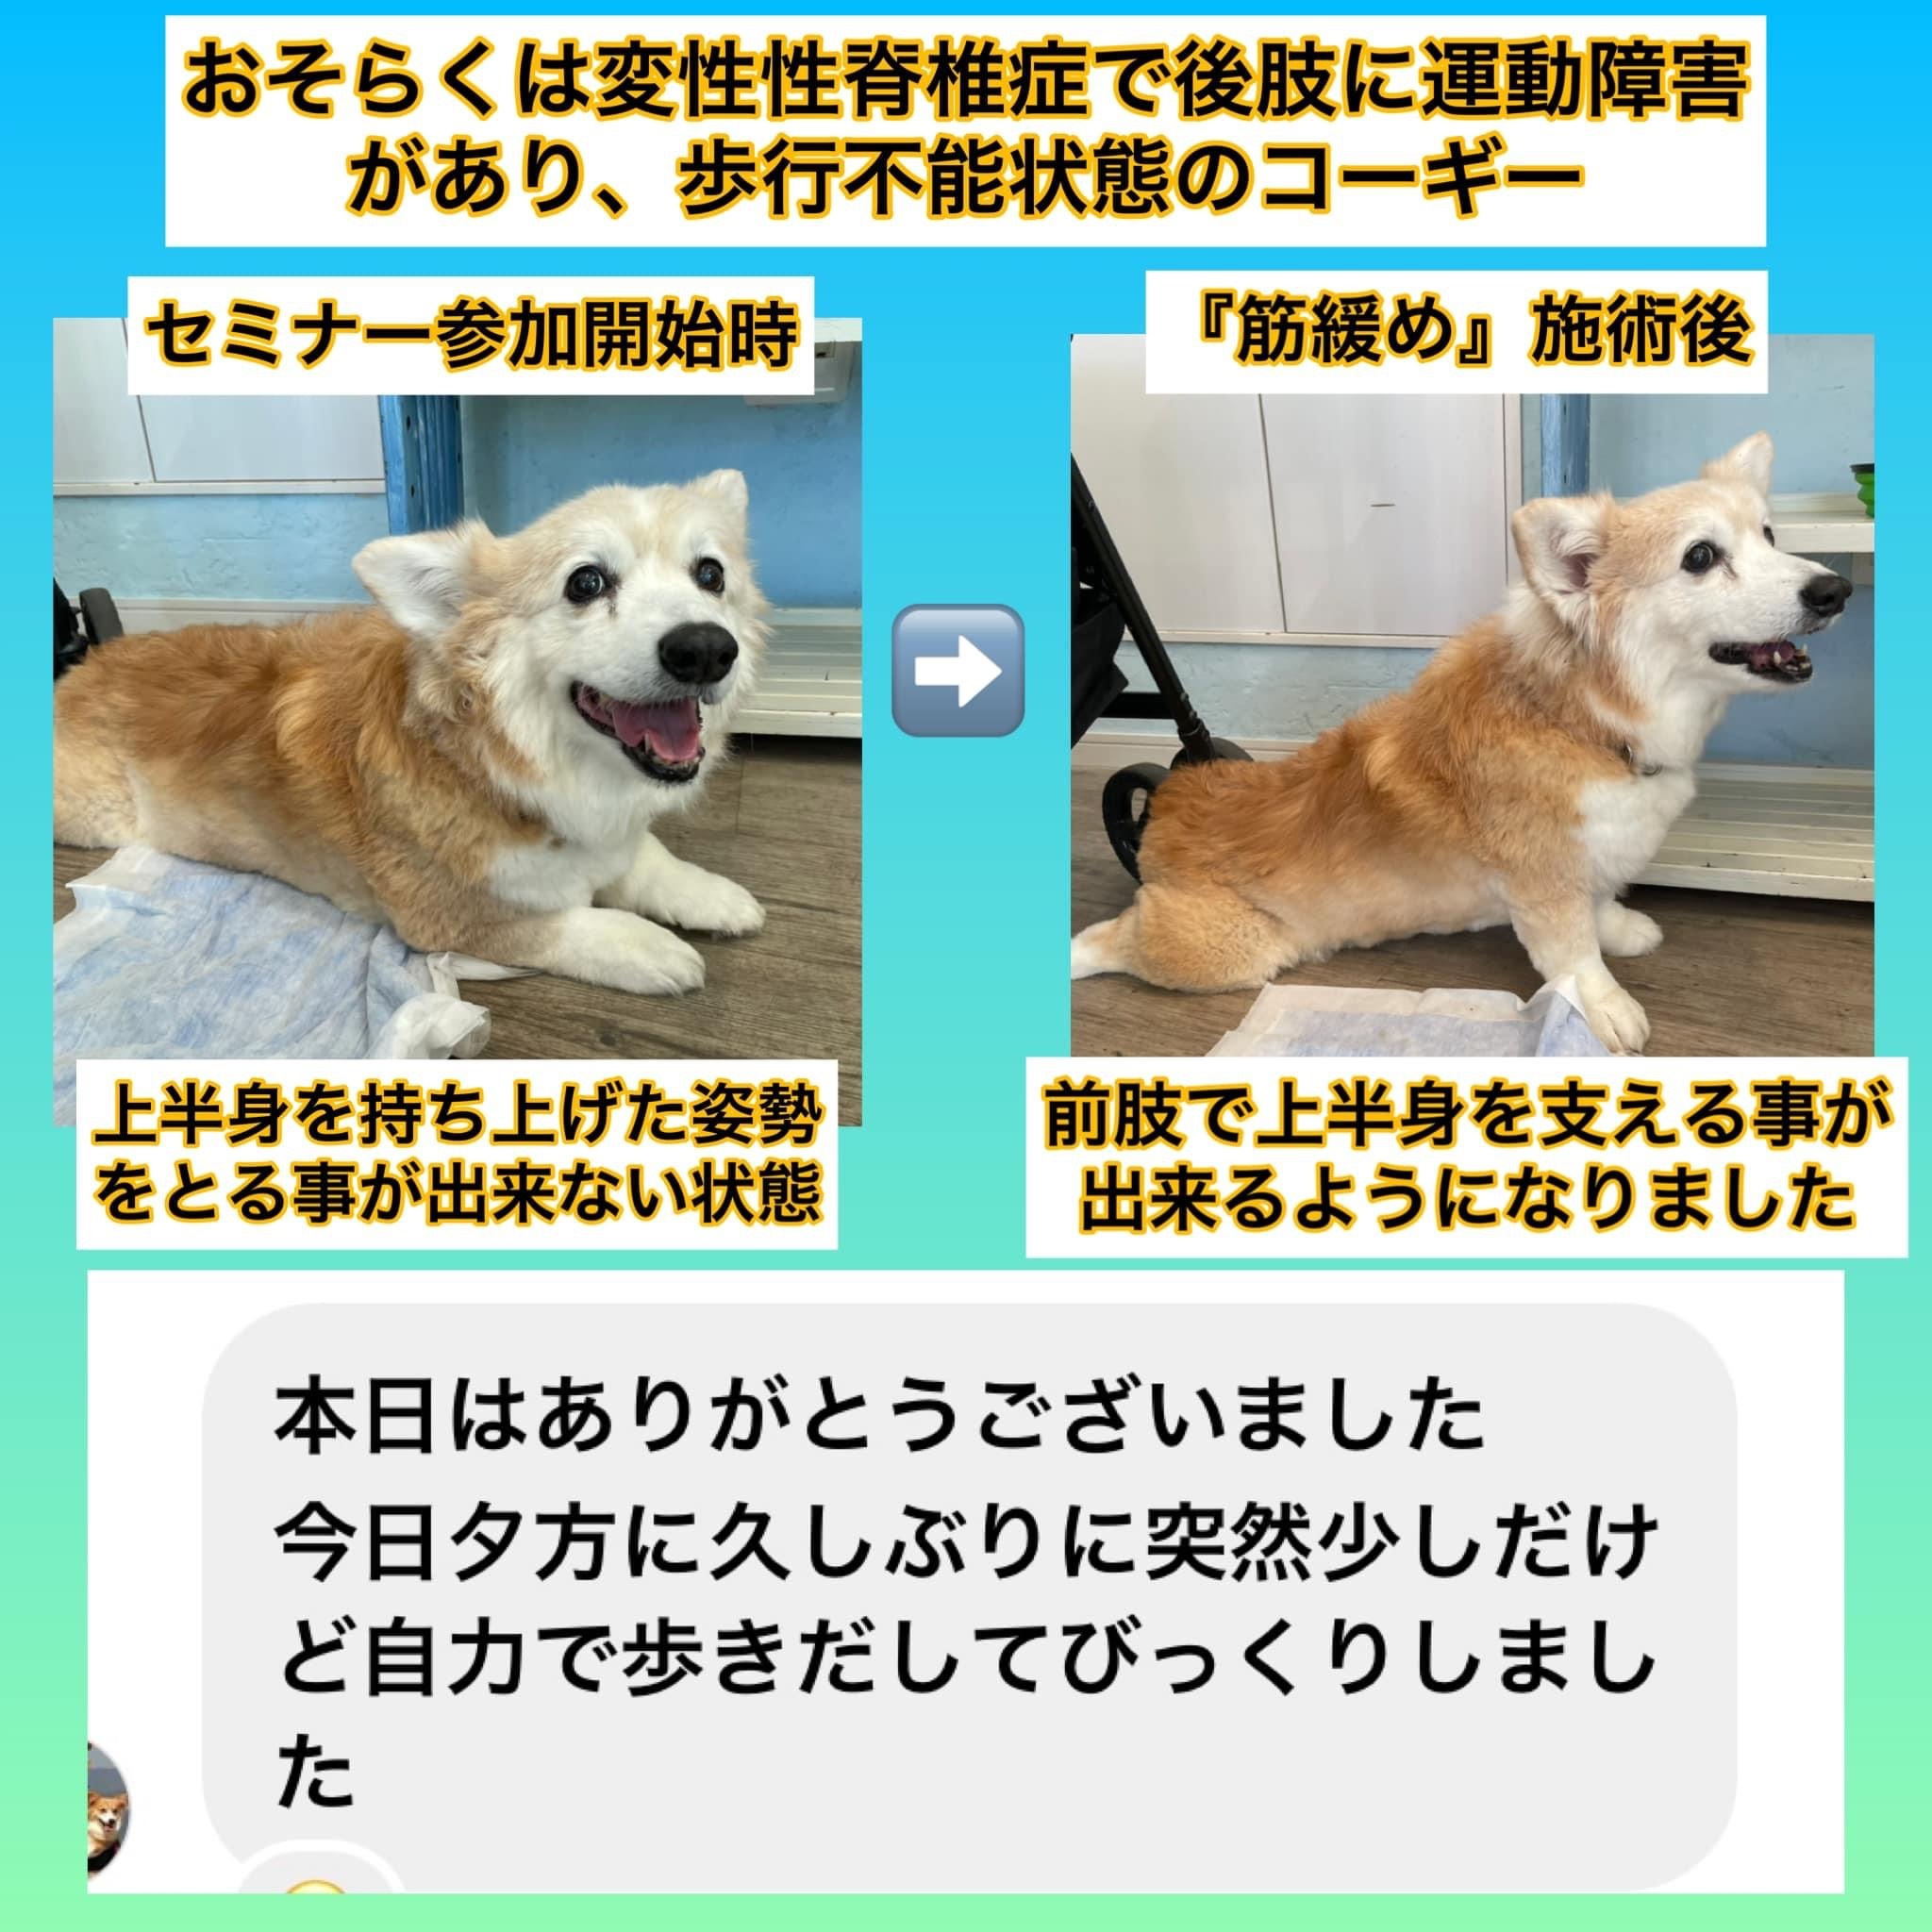 神奈川県犬の整体マッサージ教室に参加された愛犬さん